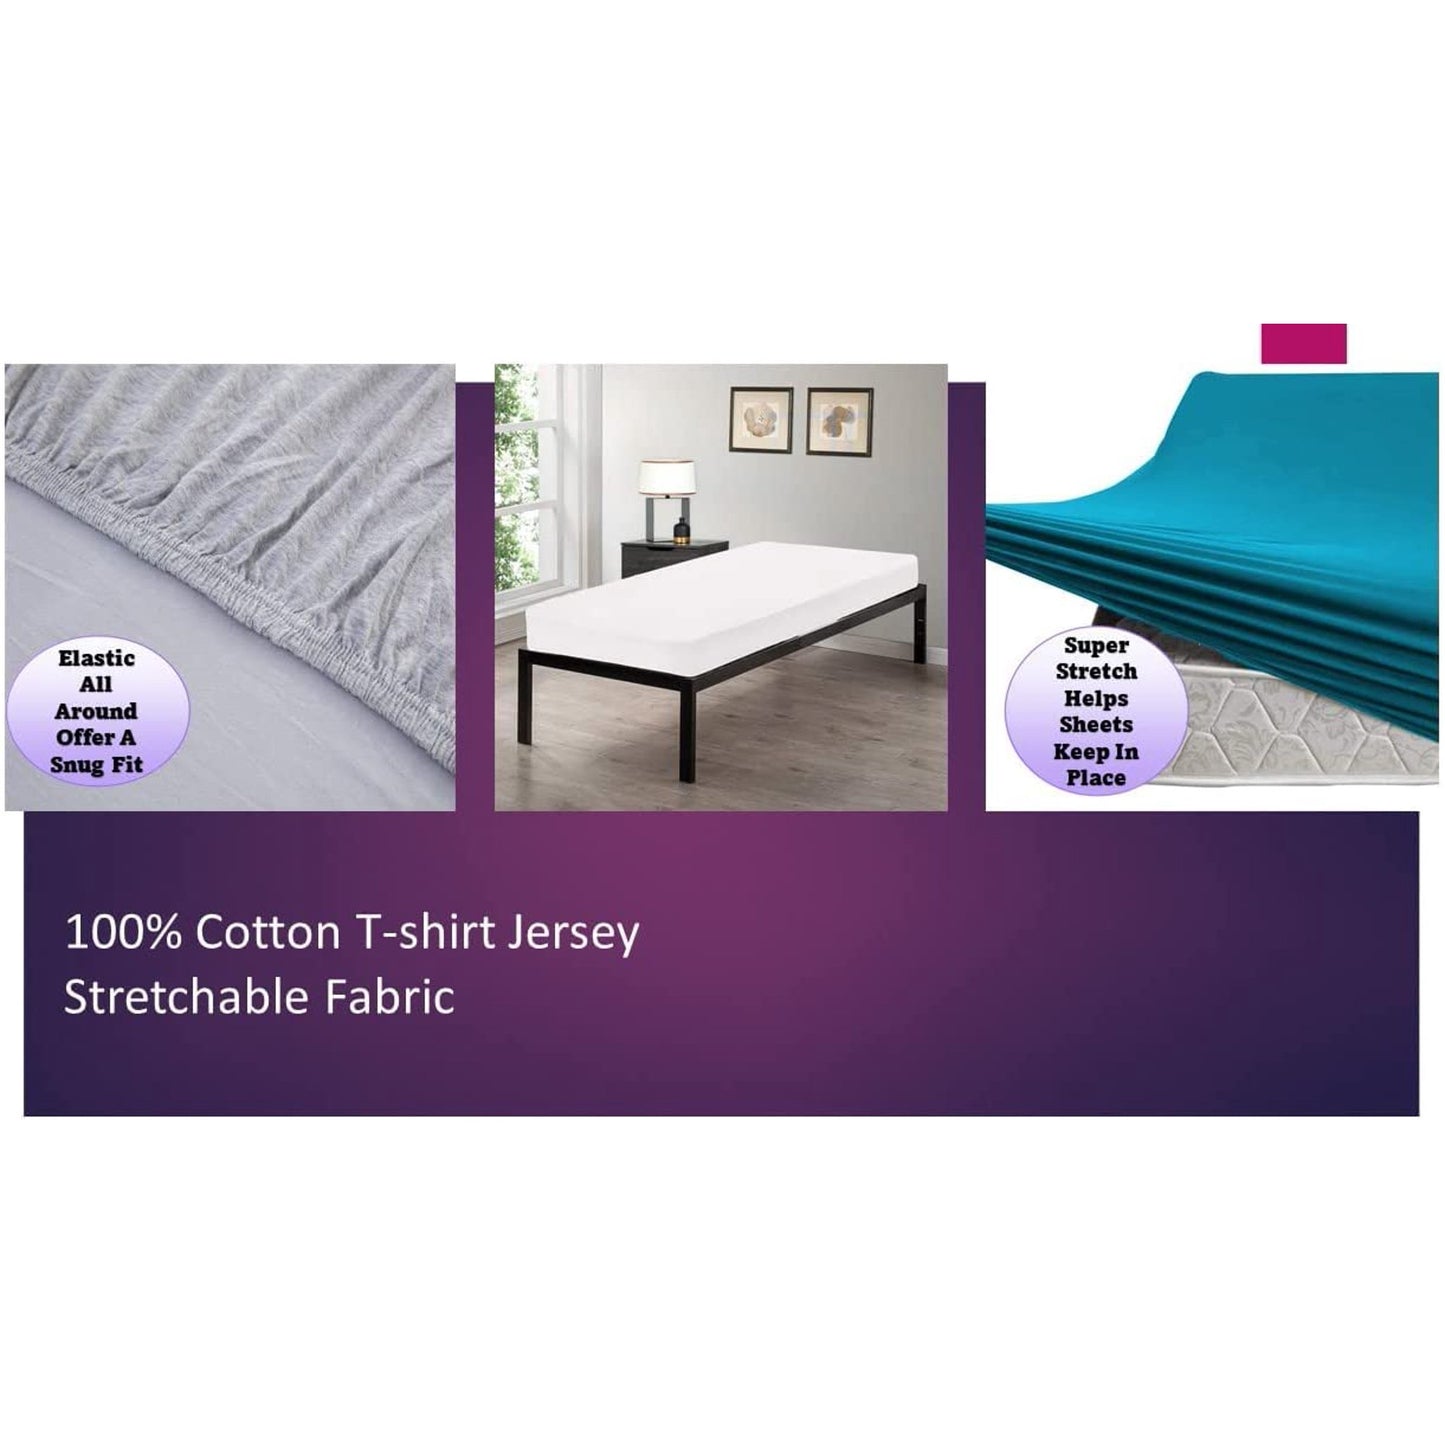 100% Combed T-Shirt Cotton Jersey Knit Camp Sheet Set, 1 Fitted cot Sheet, 1 Flat Sheet, 1 Standard Pillow case Navy